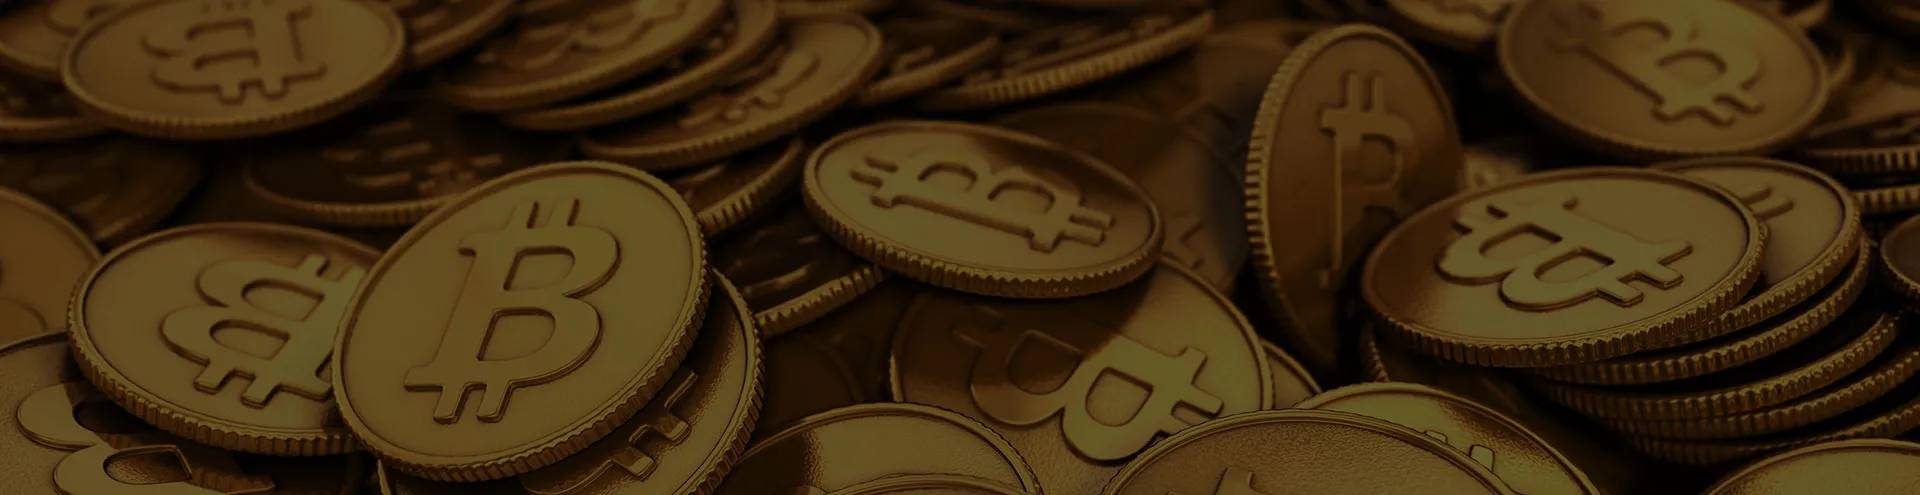 Bitcoin Code - リップルとビットコインの違いは何ですか?